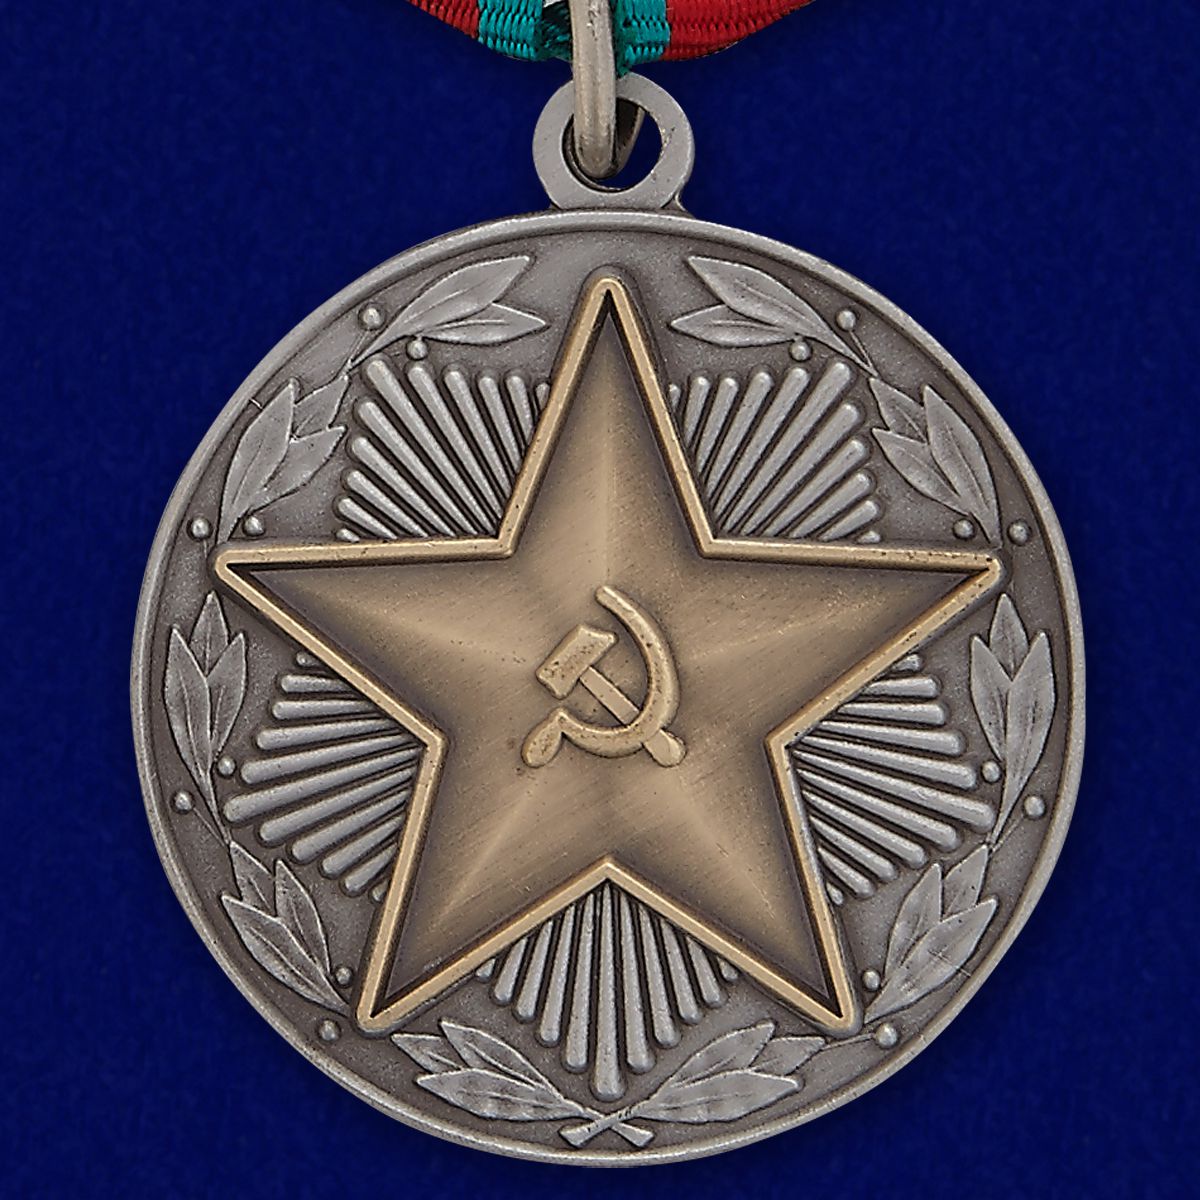 Медаль "За безупречную службу" ВС СССР 2 степени